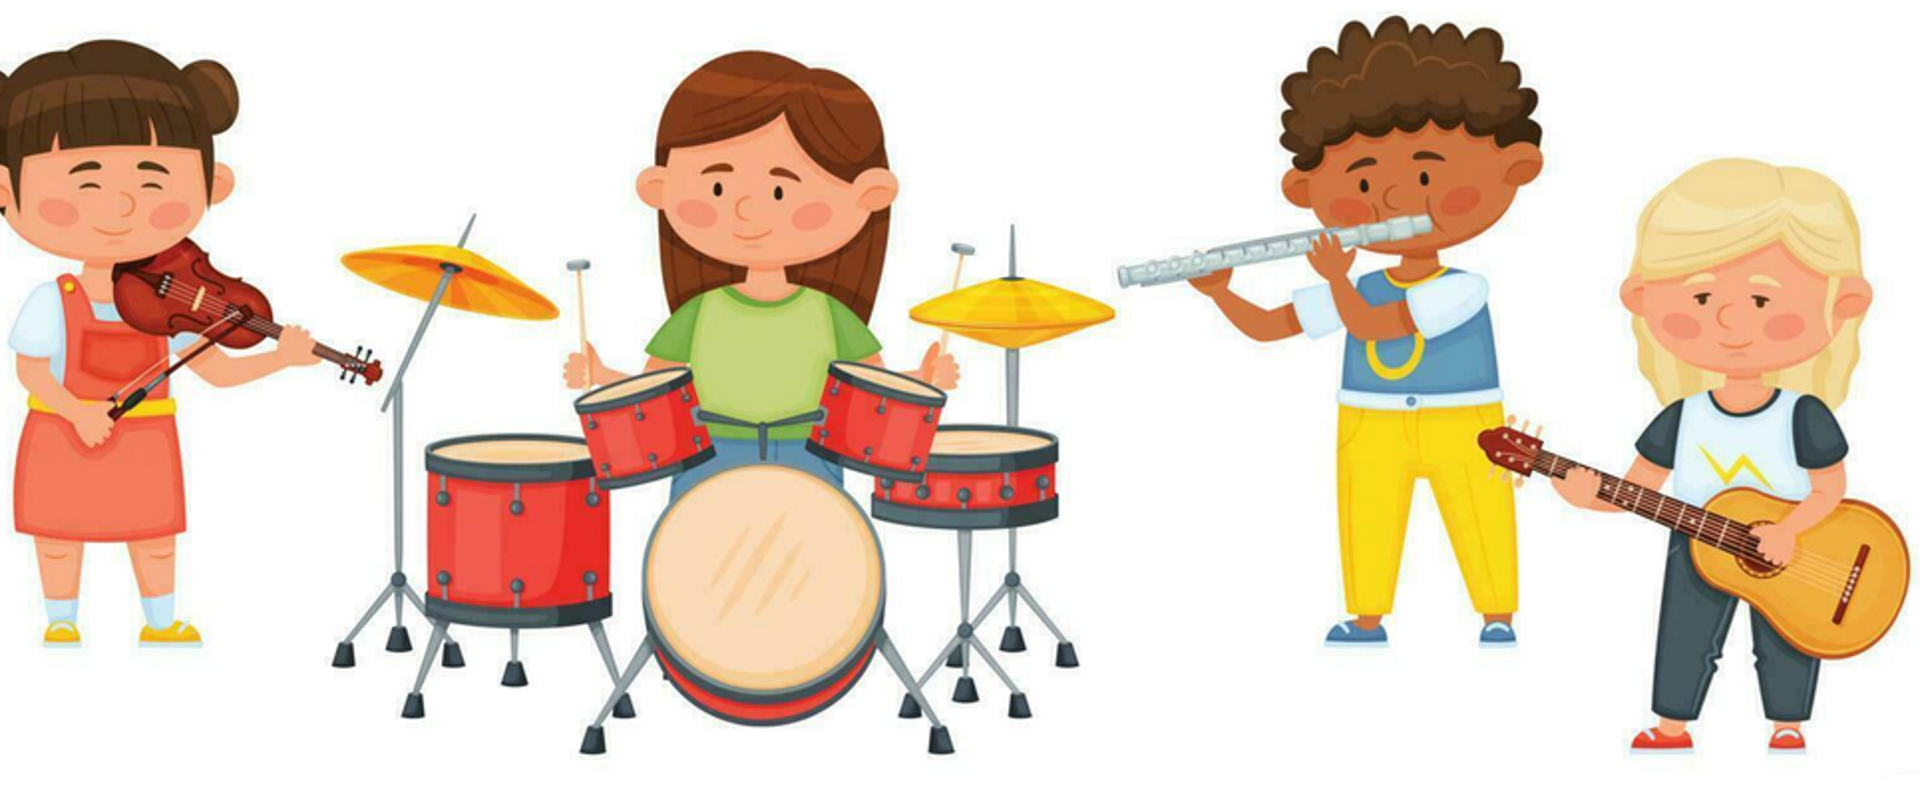 Namalowane pięcioro dzieci, trzymających instrumenty muzyczne. Pierwsza dziewczynka o blond włosach i niebieskich spodniach gra na stojąco na czerwonej gitarze elektrycznej, druga dziewczynka w czerwonej sukience i brązowych włosach gra na skrzypcach, po środku stoi dziewczynka o brązowych długich włosach gra na zestawie perkusyjnym, z prawej strony ciemnoskóry chłopiec o brązowych włosach w żółtych spodniach i niebieskim T-shirt'cie gra na flecie poprzecznym, pierwsza z prawej na gitarze gra na stojąco dziewczynka o blond włosach i czarnych spodniach i białej koszulce.